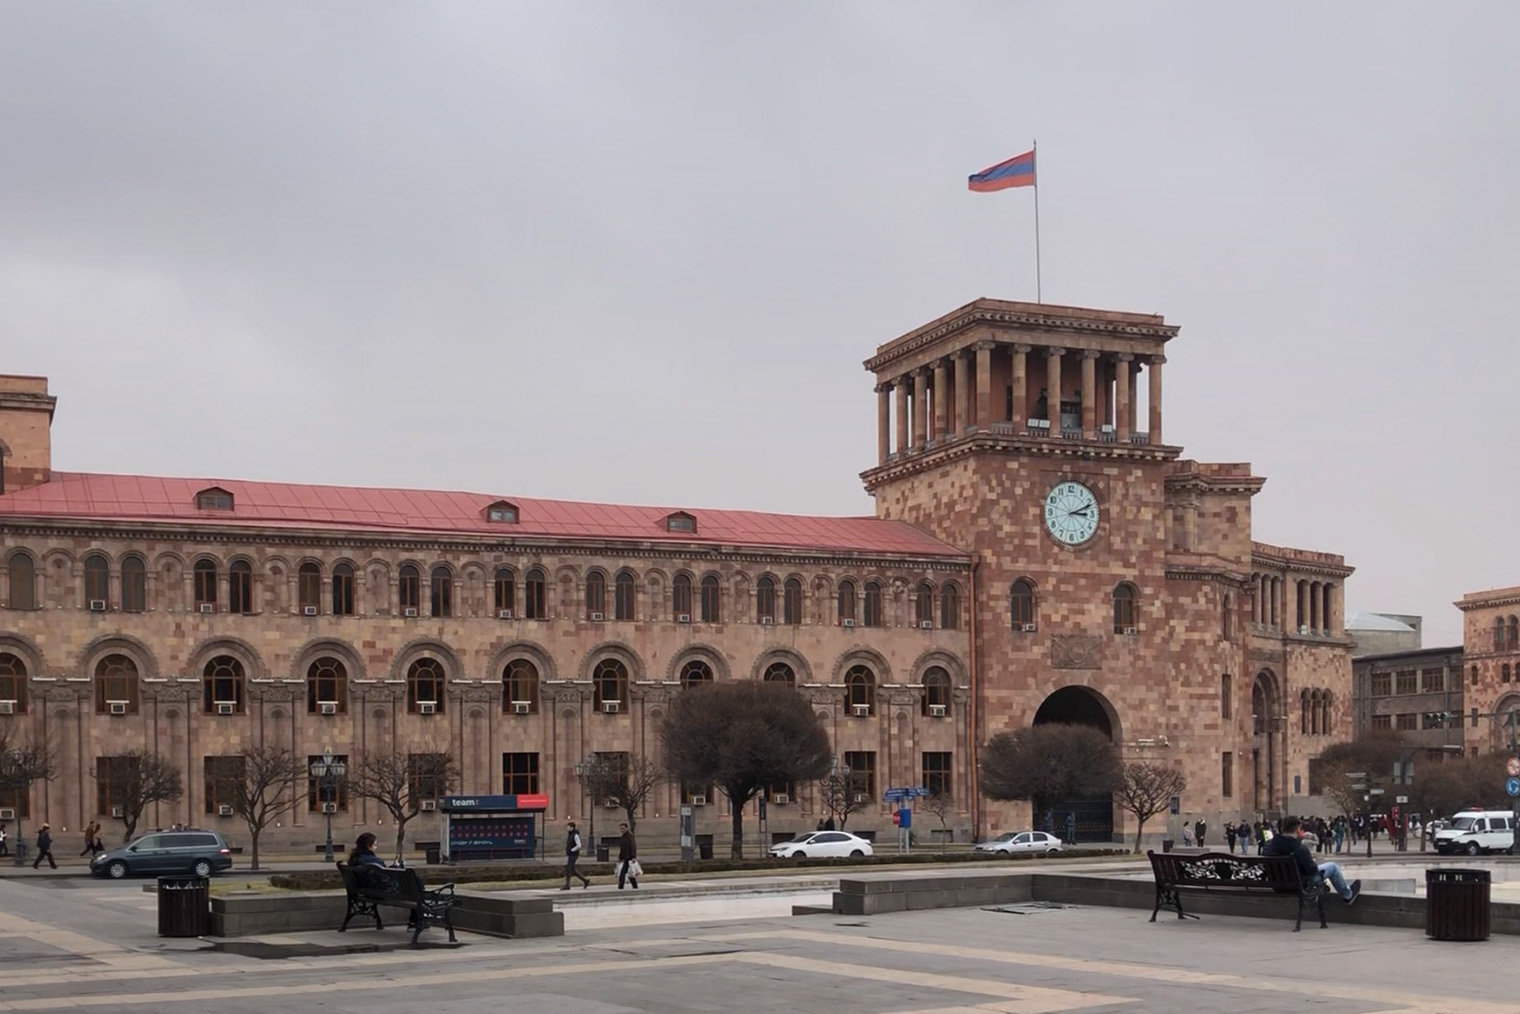 Я ездила подавать документы на визу США в Ереван. Перед подачей было время погулять и посмотреть на достопримечательности центральной площади города. Тогда я еще не подозревала, какие сложности с визой меня ждут